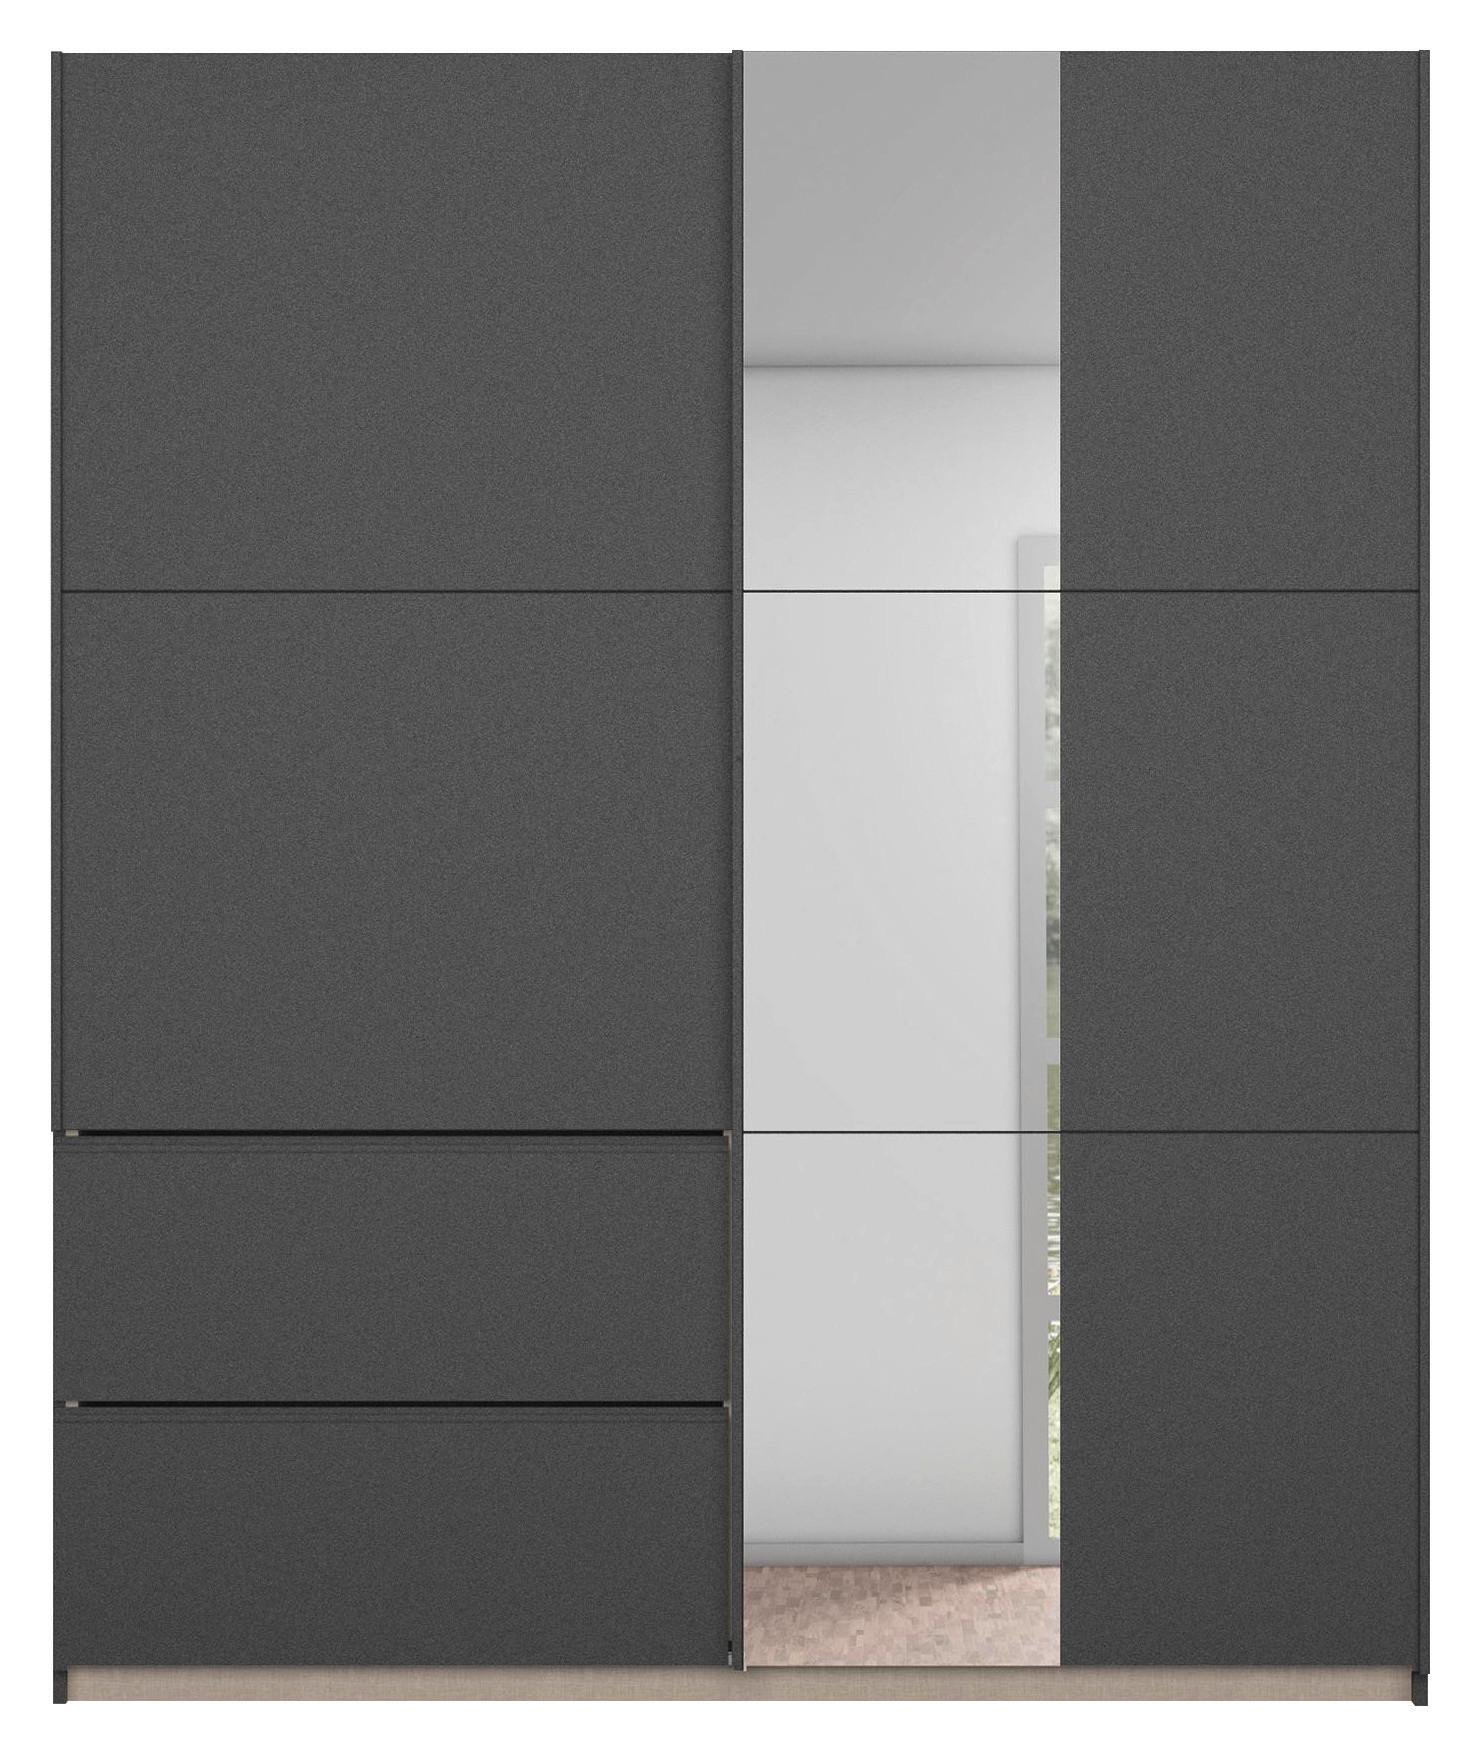 Šatní Skříň Se Zrcadlem Sevilla, Sivá, 175cm - šedá, Konvenční, kov/kompozitní dřevo (175/210/59cm) - Modern Living